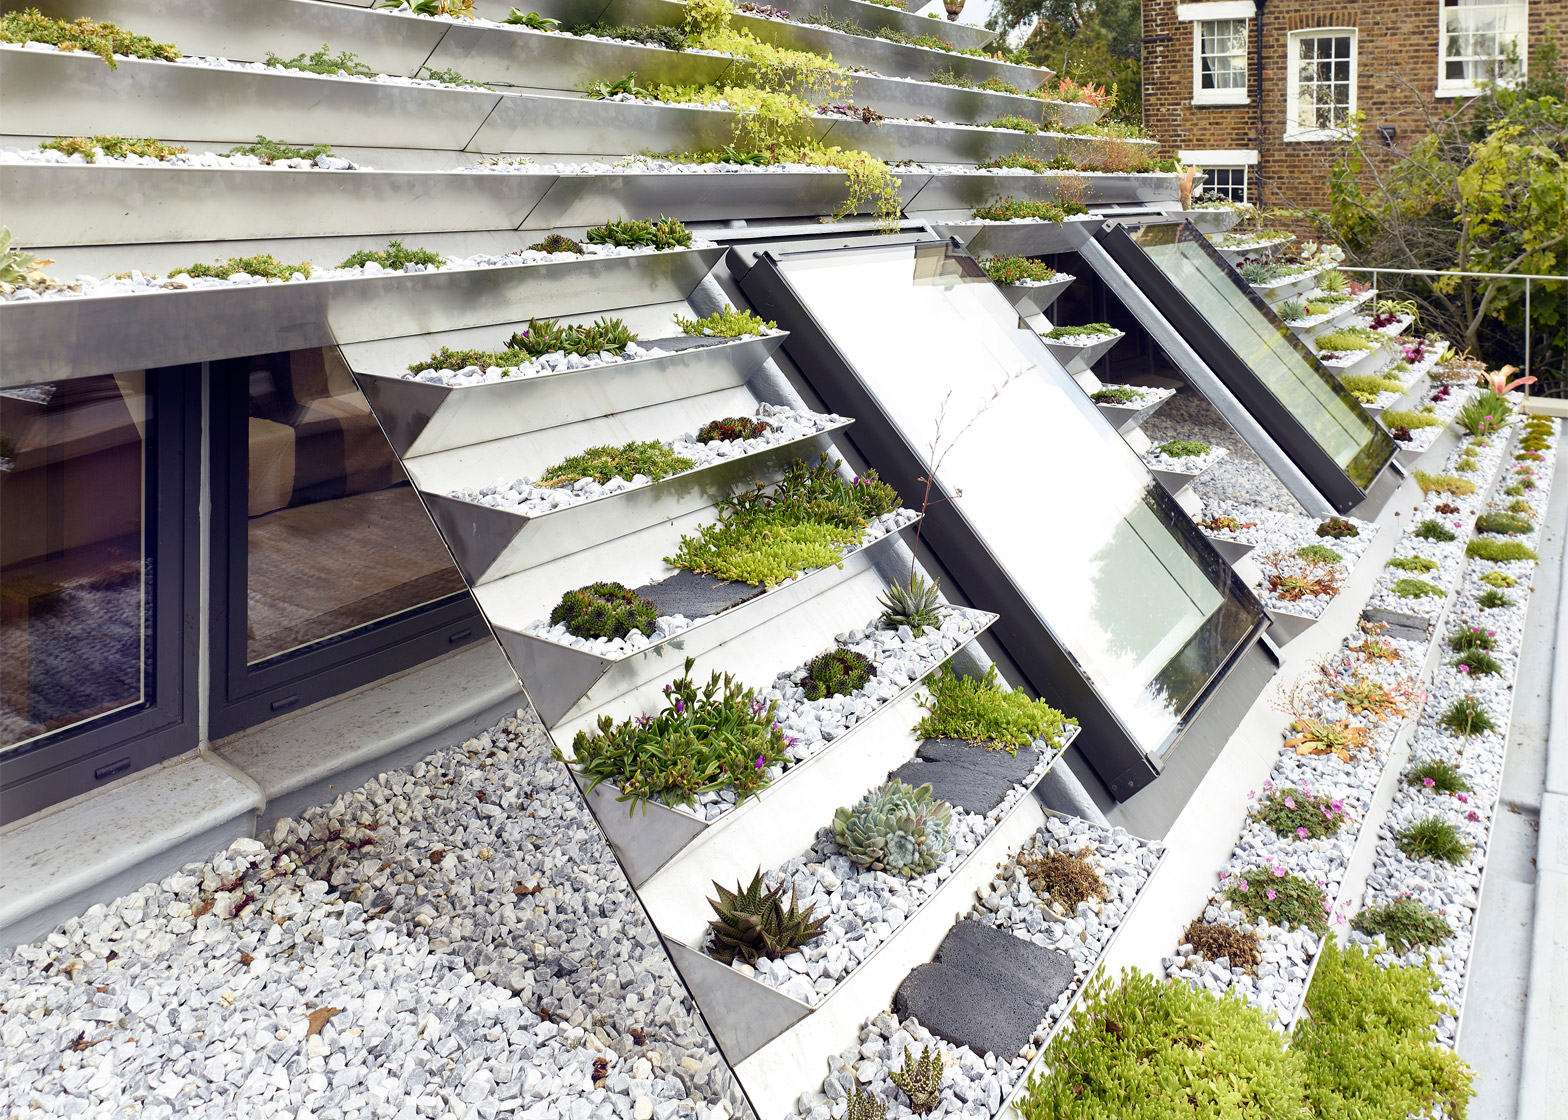 Vertical garden set into roof